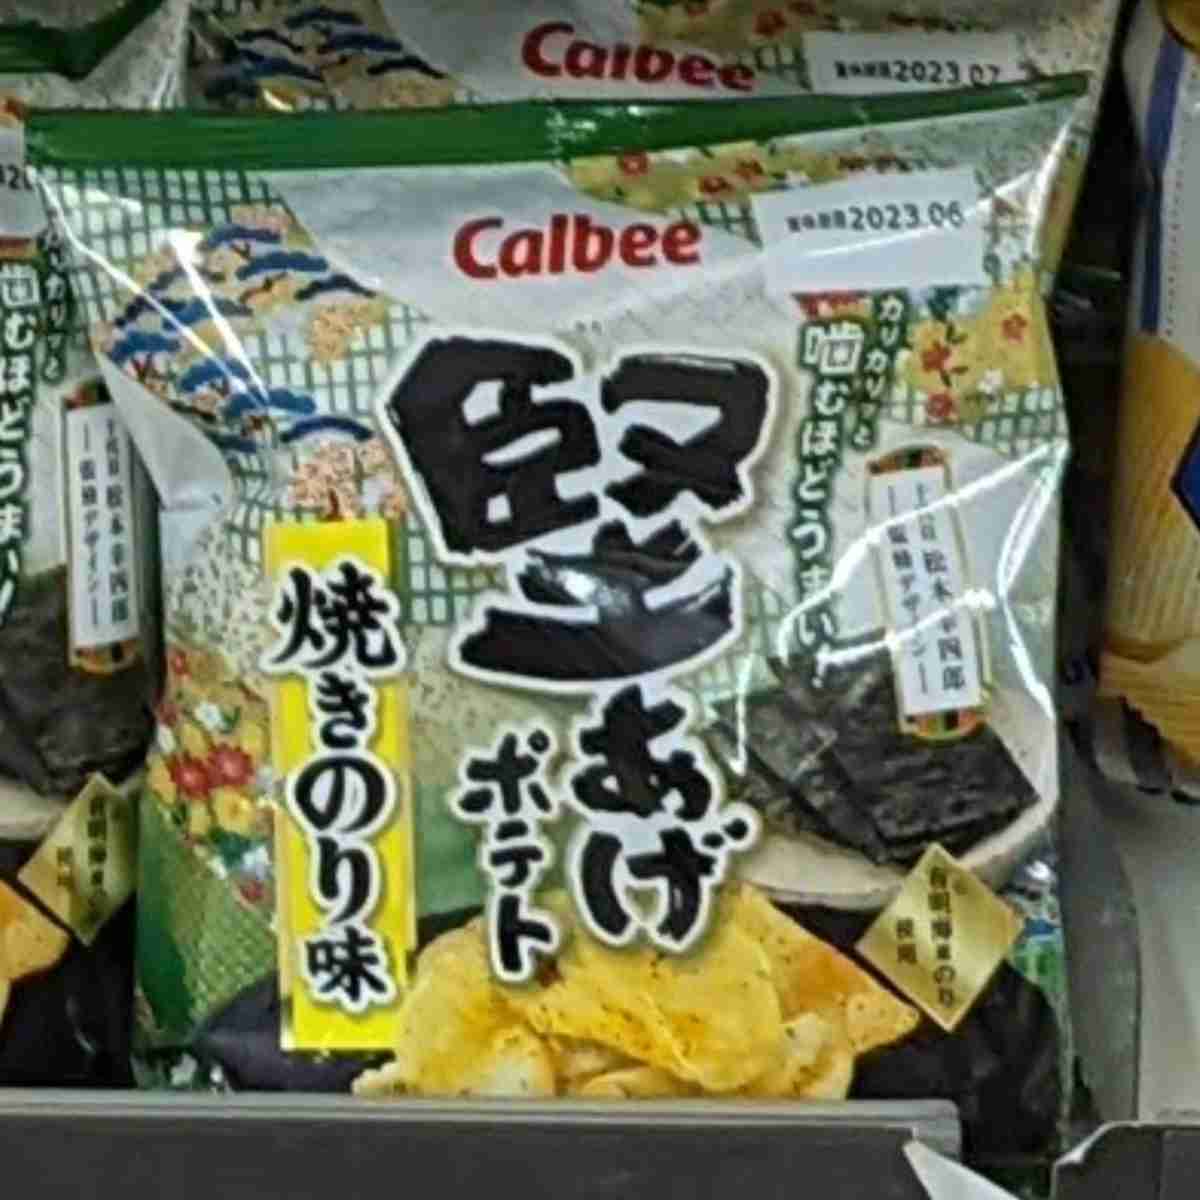 calbee seaweed salted chips